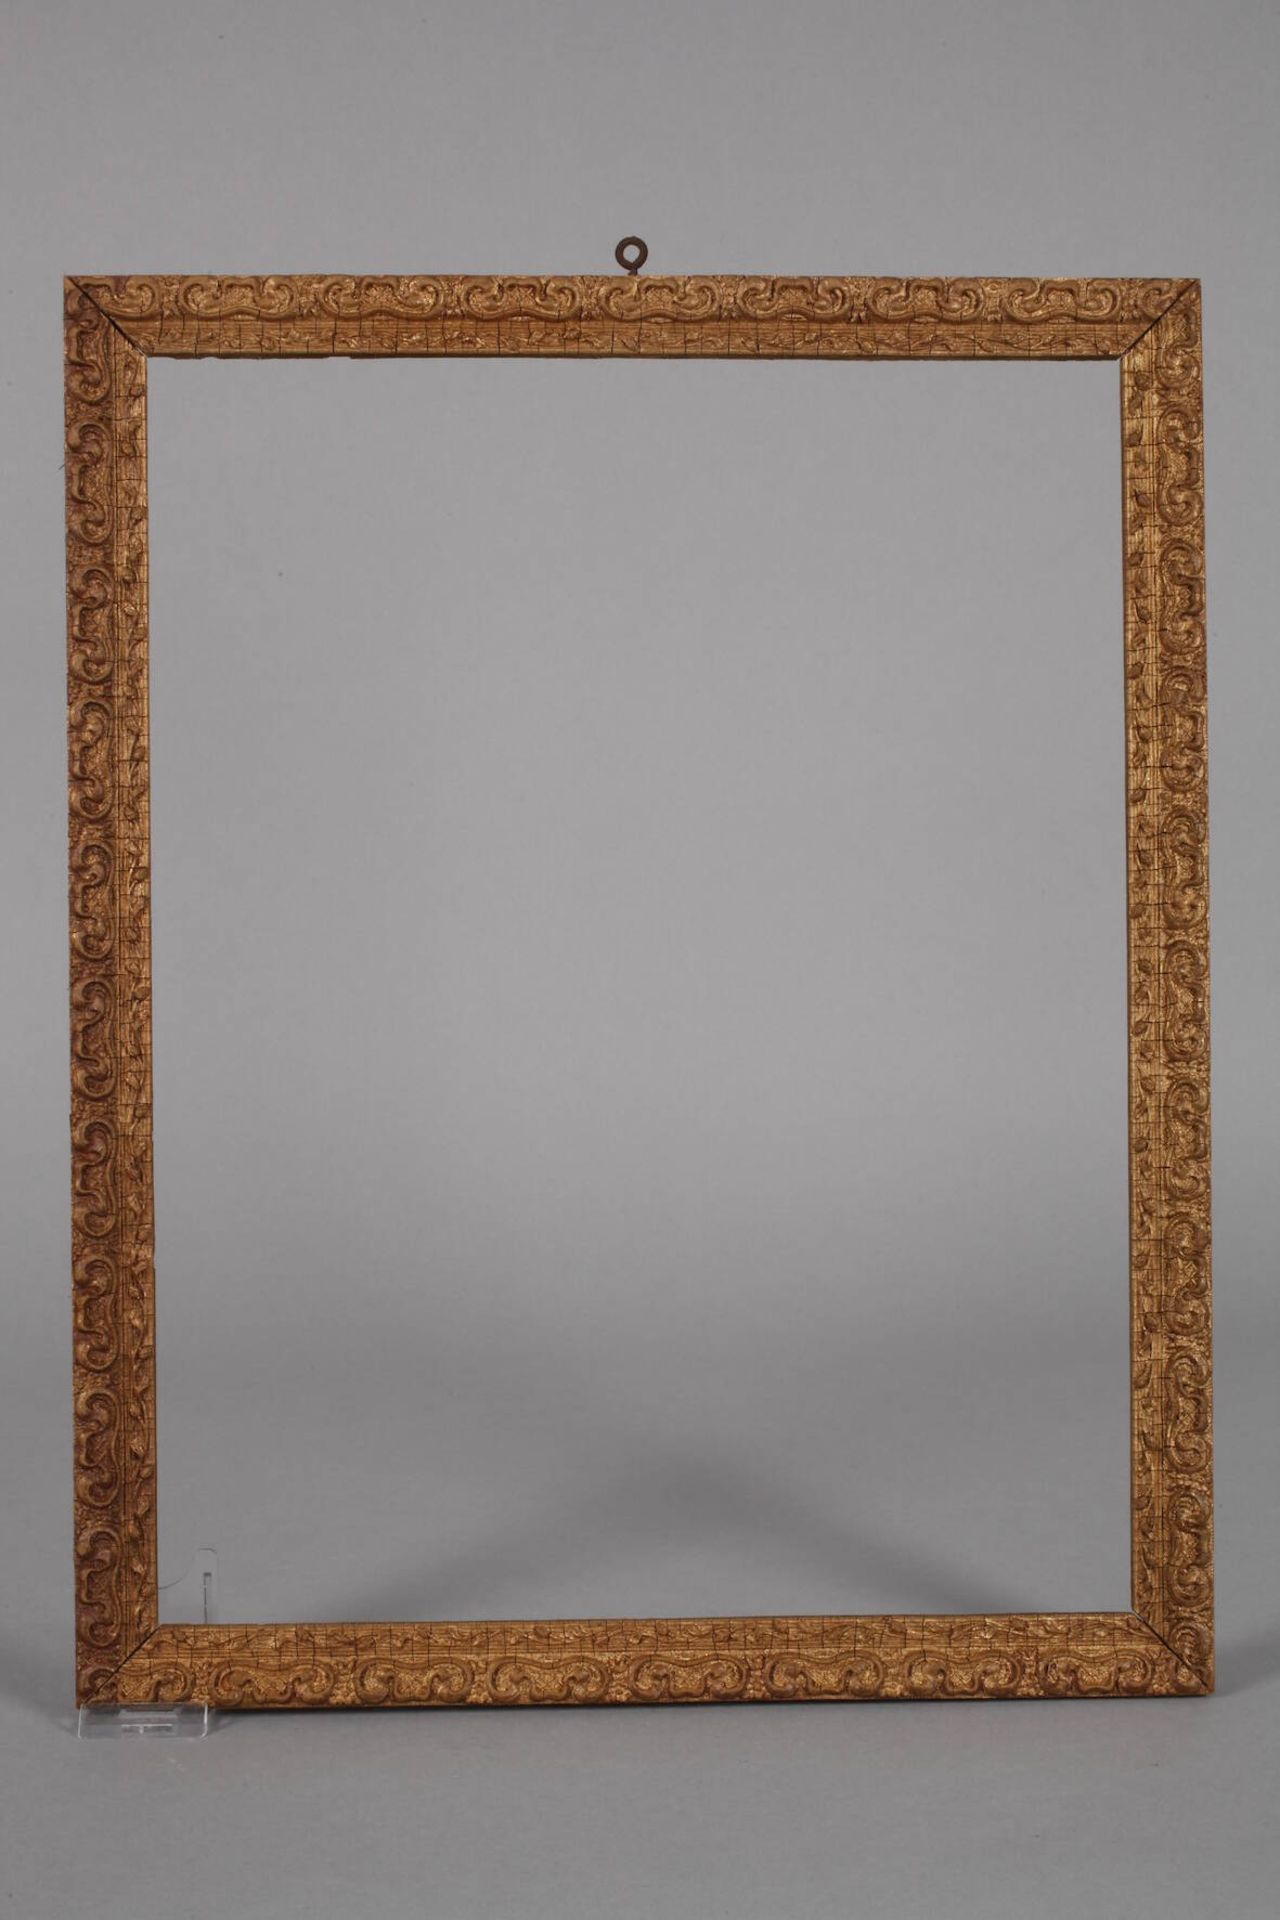 Drei StuckleistenEnde 19. Jh., ca. 2,5 cm breite, leicht steigend profilierte gestuckte Holzleisten, - Bild 3 aus 5